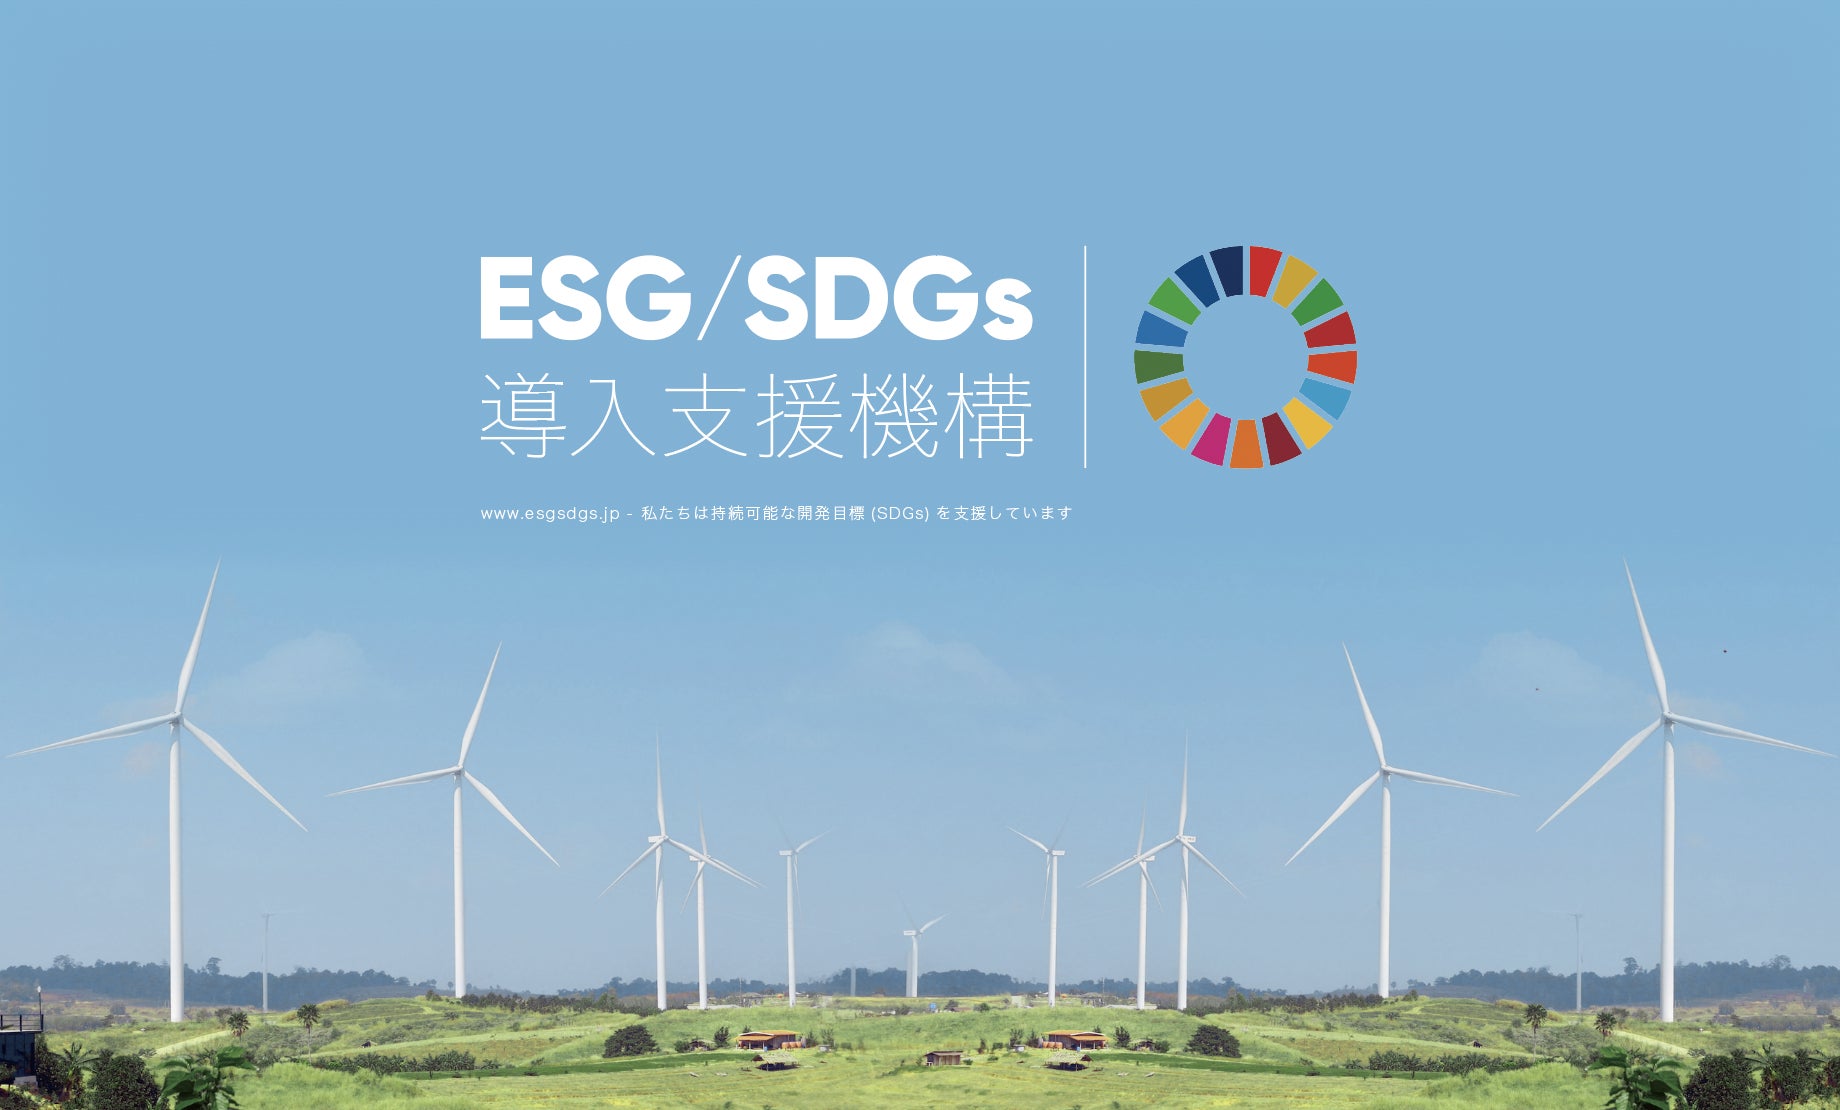 ESG/SDGs導入支援機構のオフィシャルWEBサイトの企画・デザイン制作・運用サポートをCUSTOMER CLOUDが担当 のサブ画像3